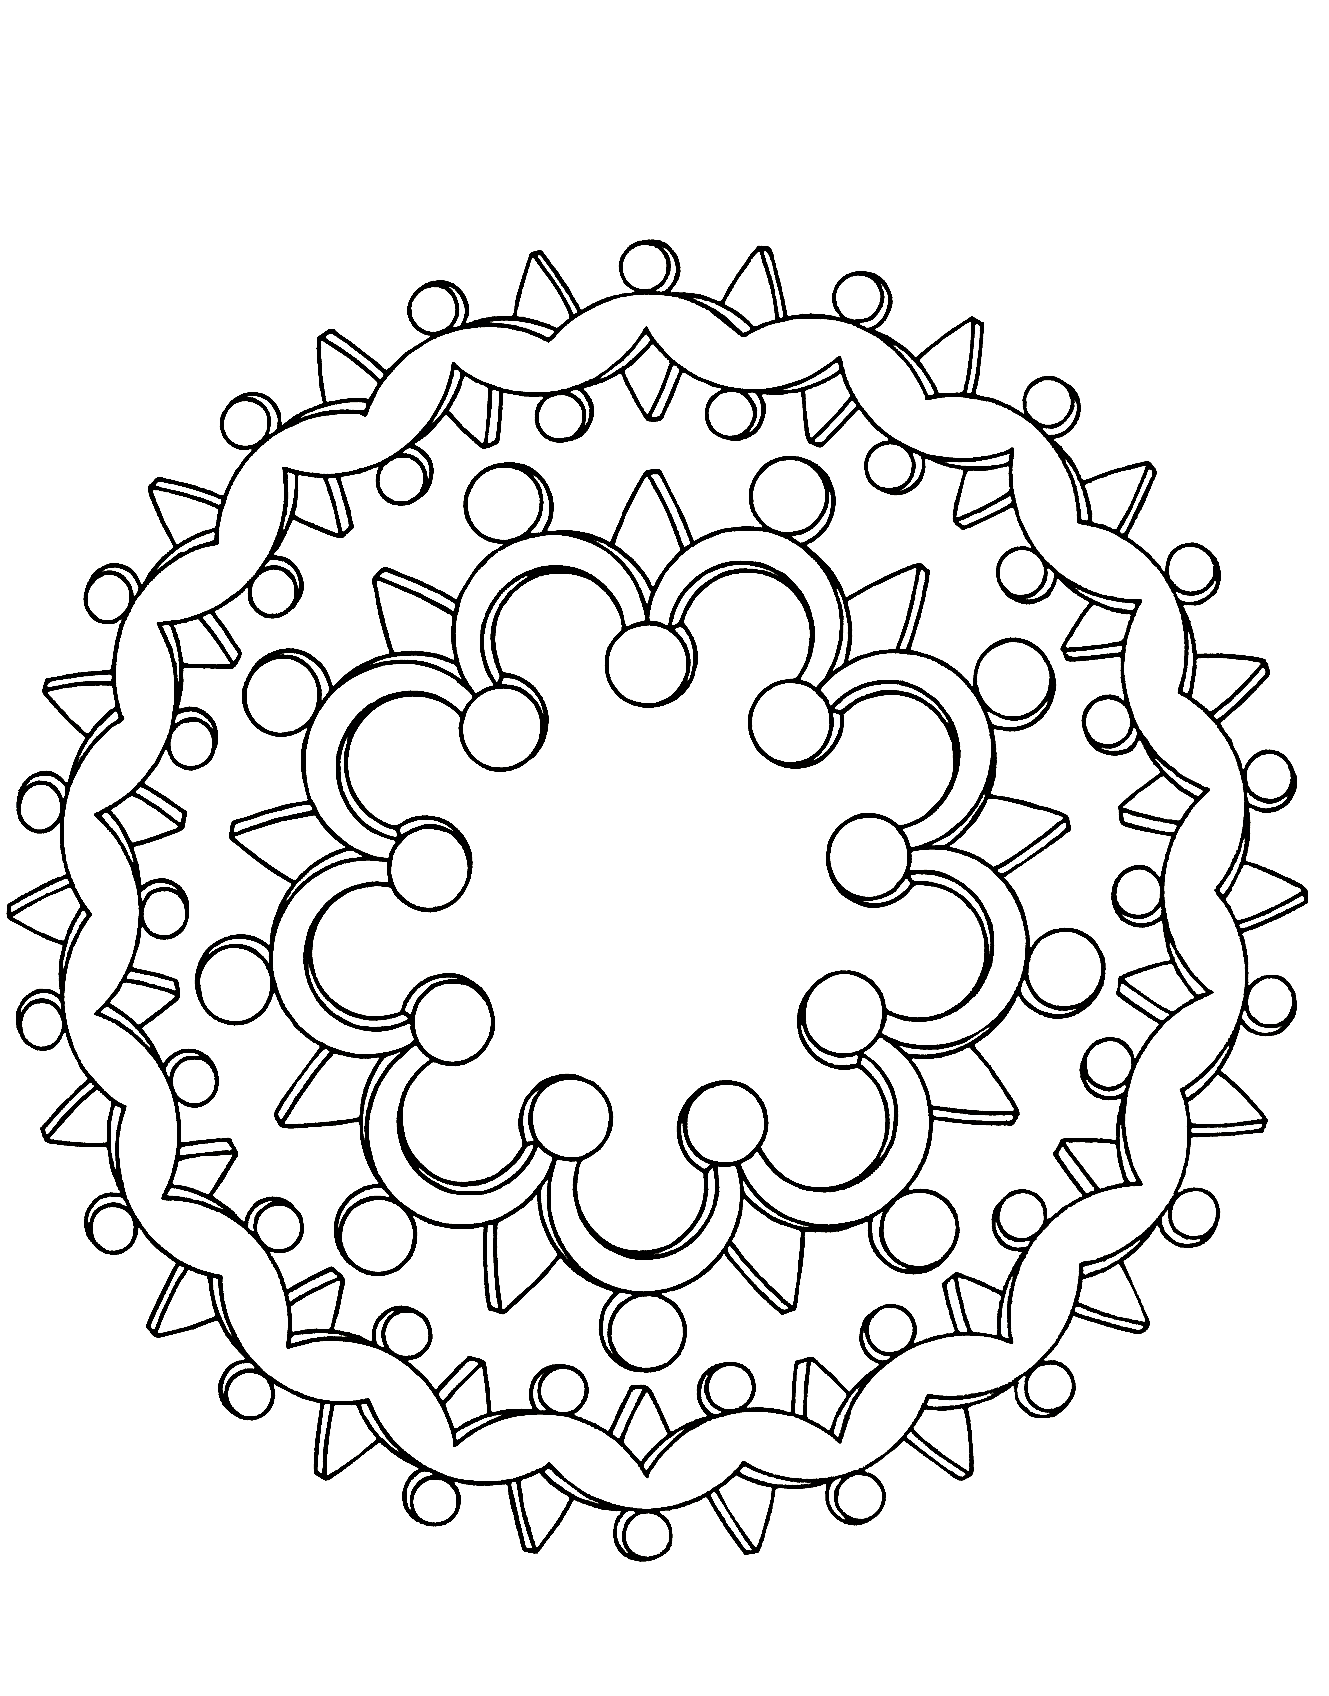 Mandala à télécharger de différents éléments tels que des cercles ainsi que plusieurs triangles autour de celui-ci.